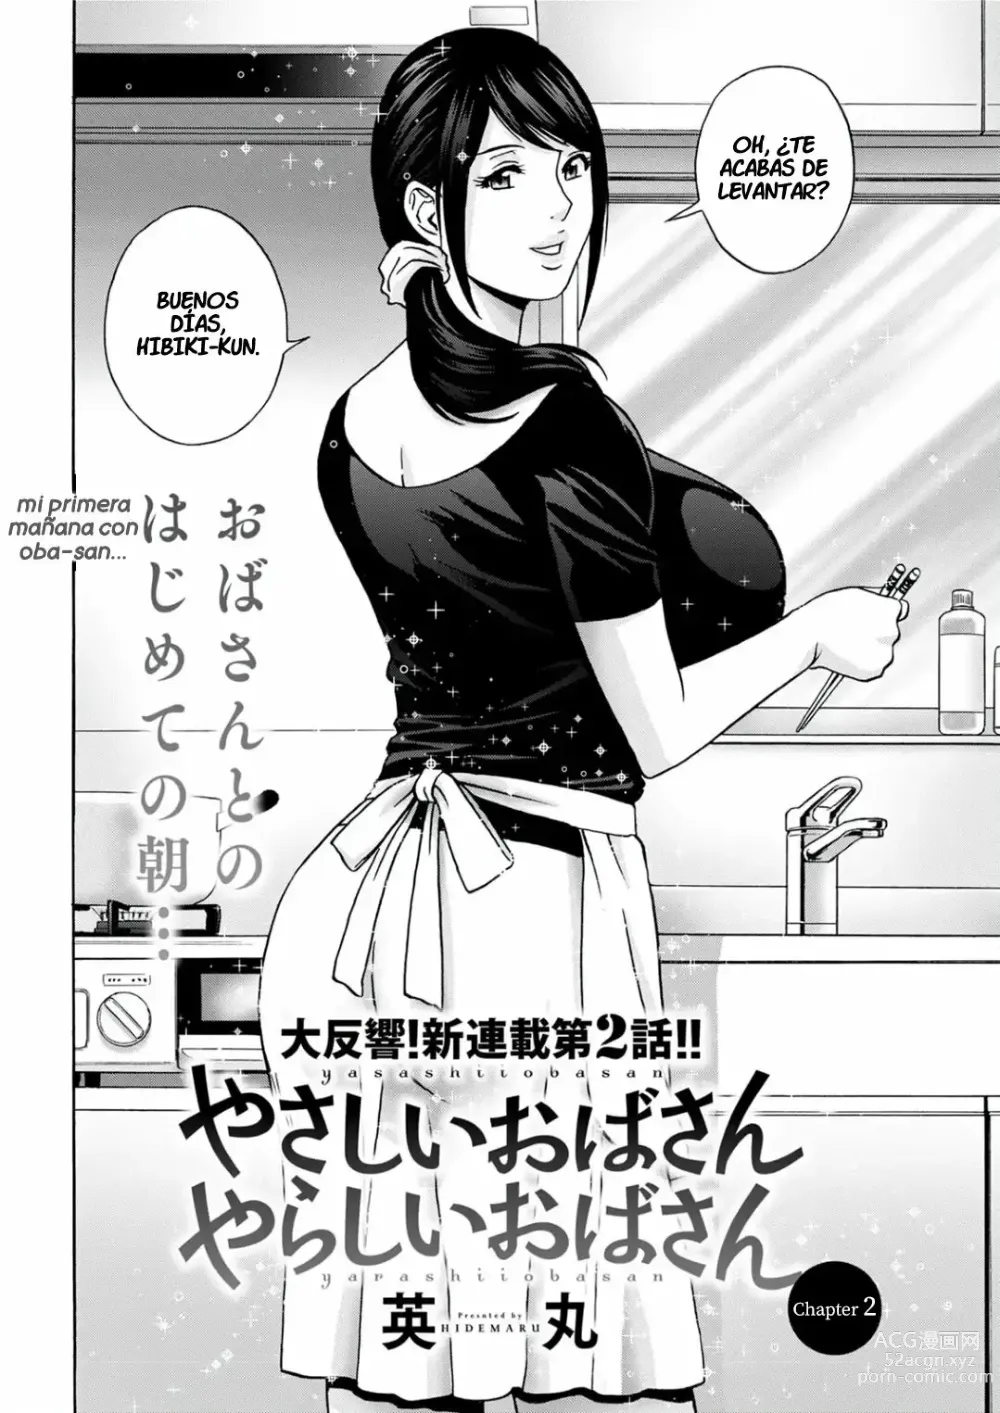 Page 25 of manga Yasashii Oba-san Yarashii Oba-san Ch. 1-4